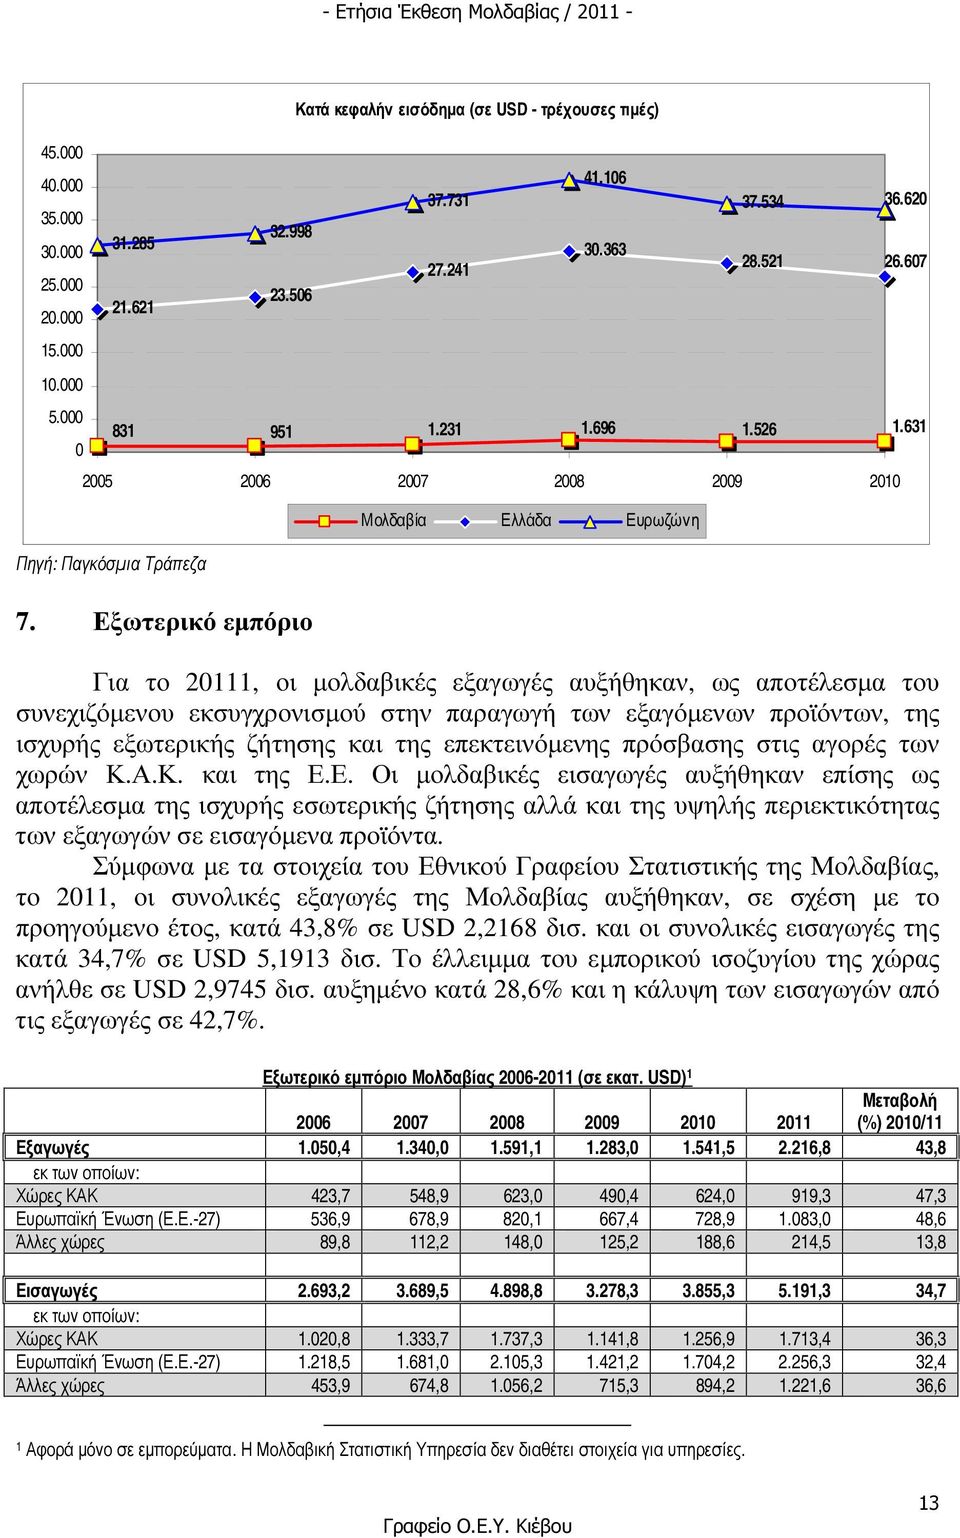 Εξωτερικό εµπόριο Μολδαβία Ελλάδα Ευρωζώνη Για το 20111, οι µολδαβικές εξαγωγές αυξήθηκαν, ως αποτέλεσµα του συνεχιζόµενου εκσυγχρονισµού στην παραγωγή των εξαγόµενων προϊόντων, της ισχυρής